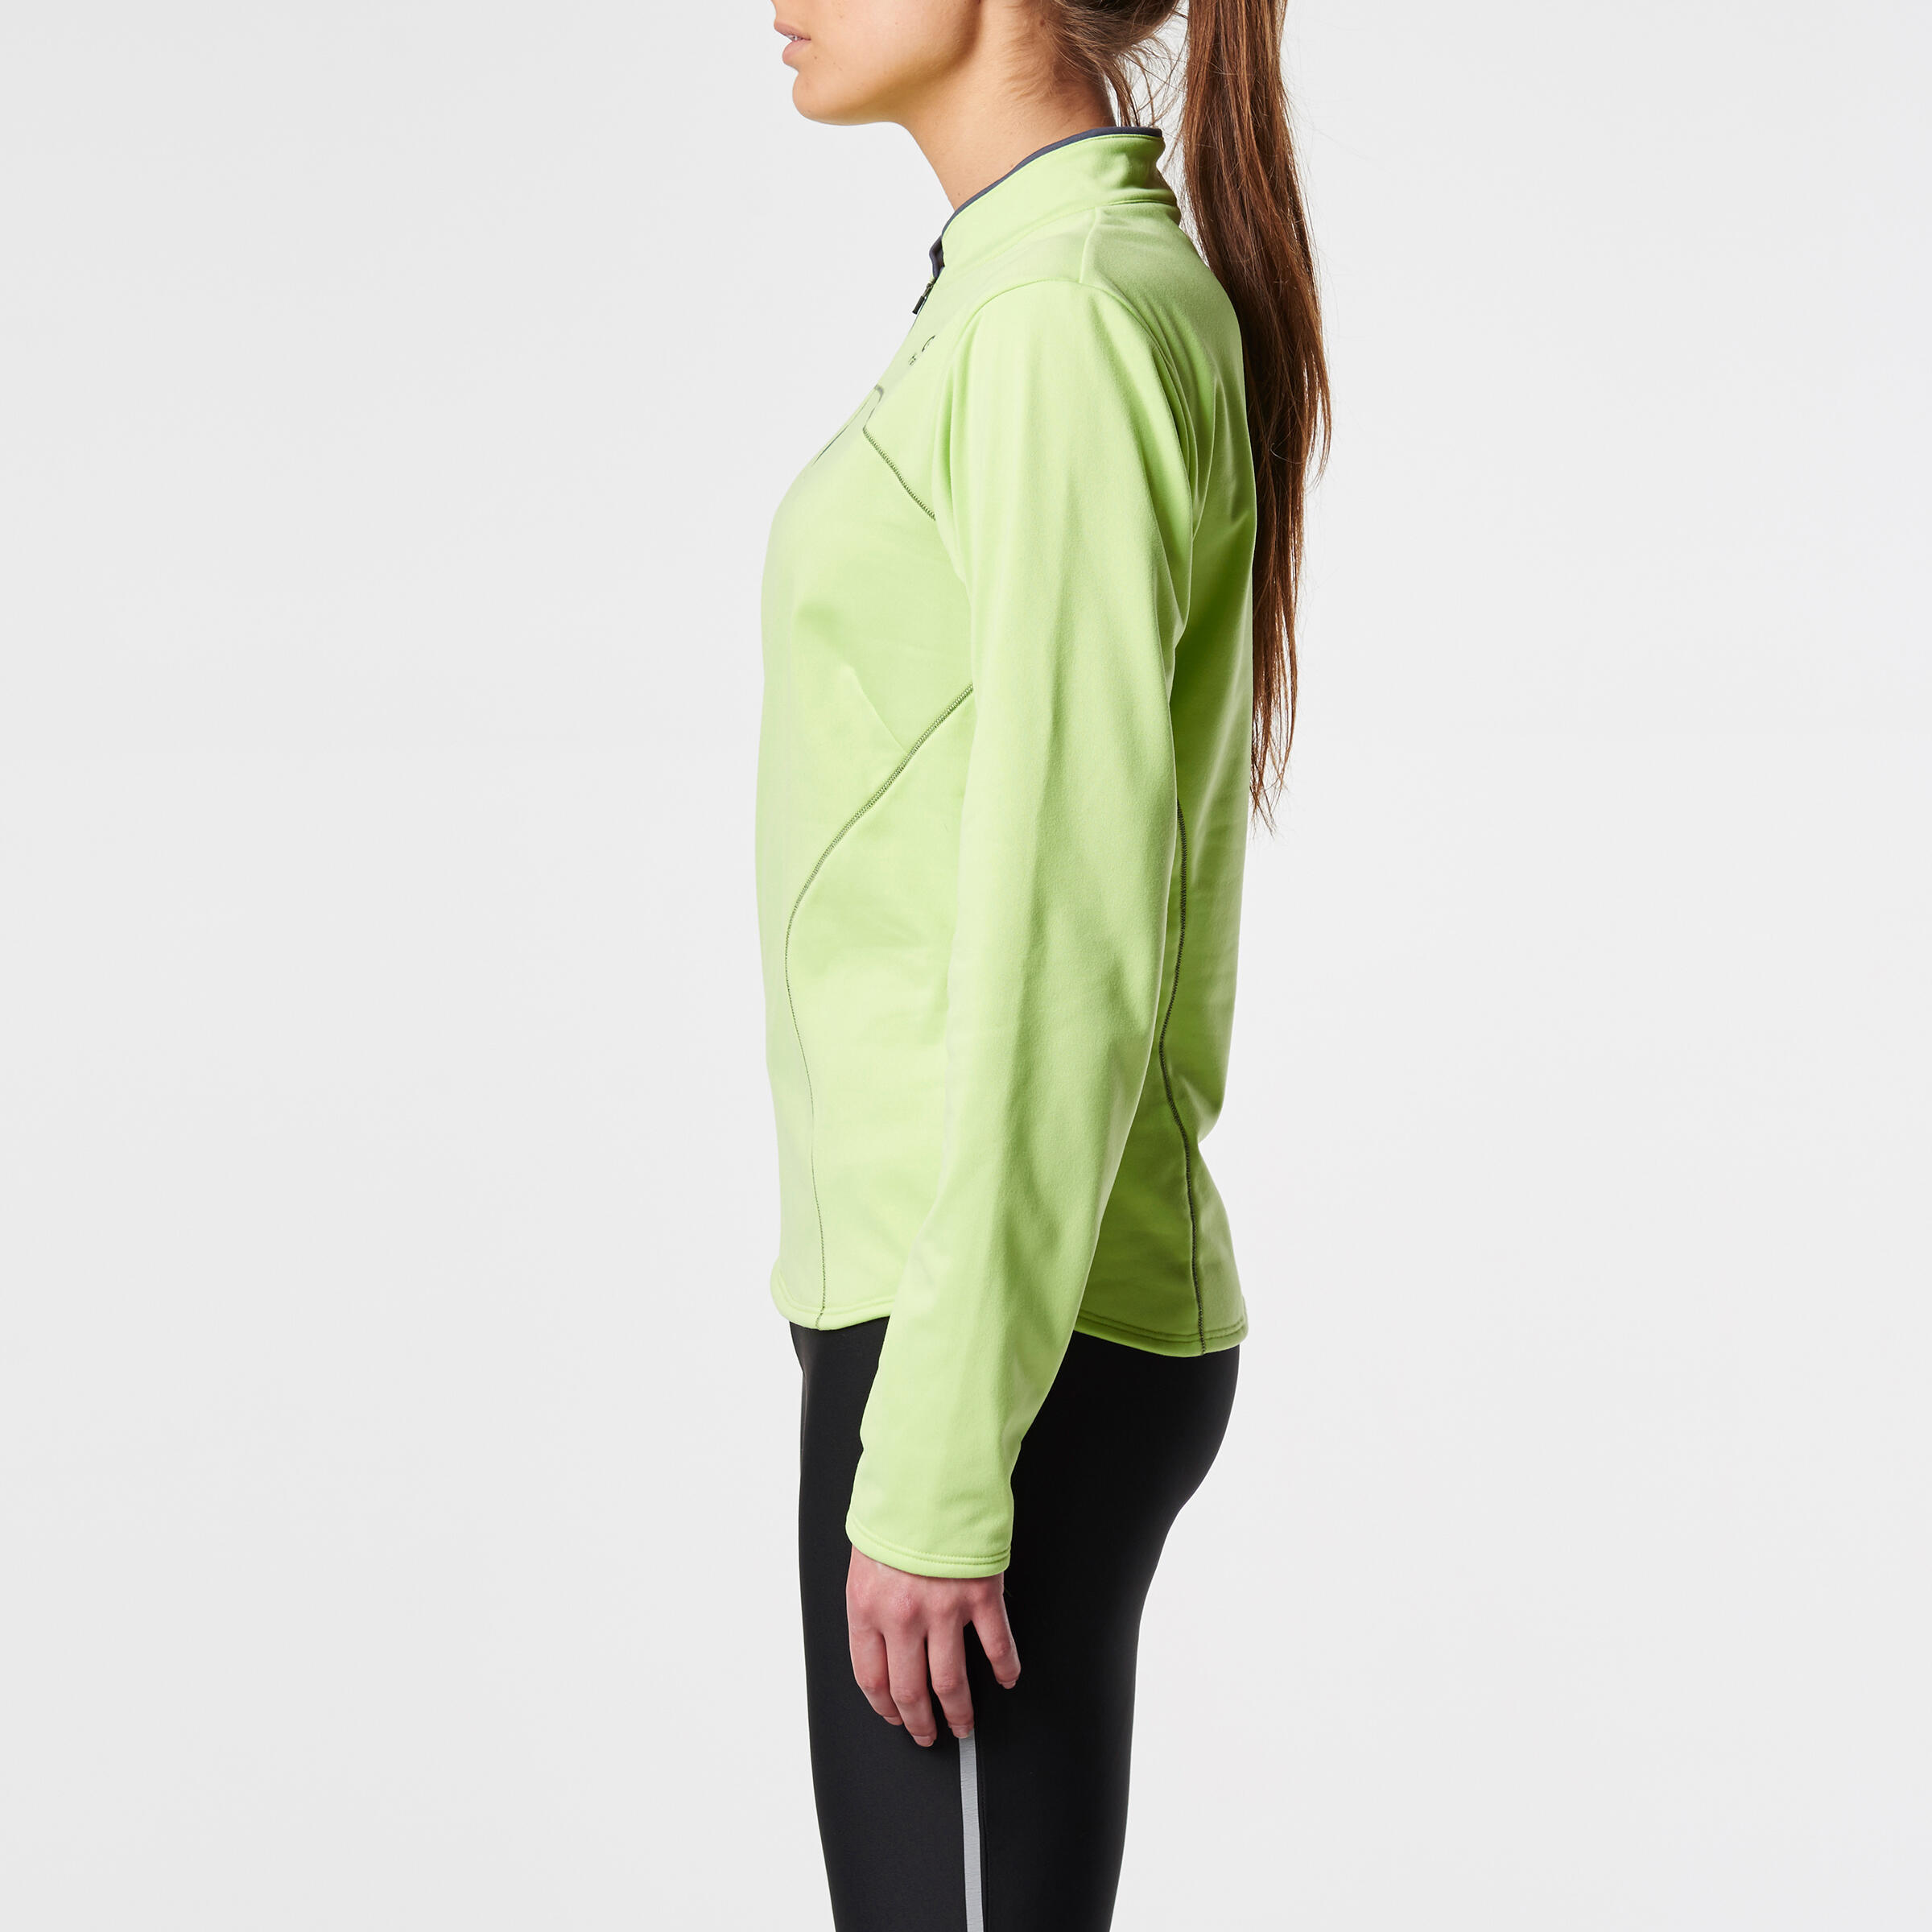 Ekiden Women's Warm Long Sleeved Running Jersey - Green 4/11